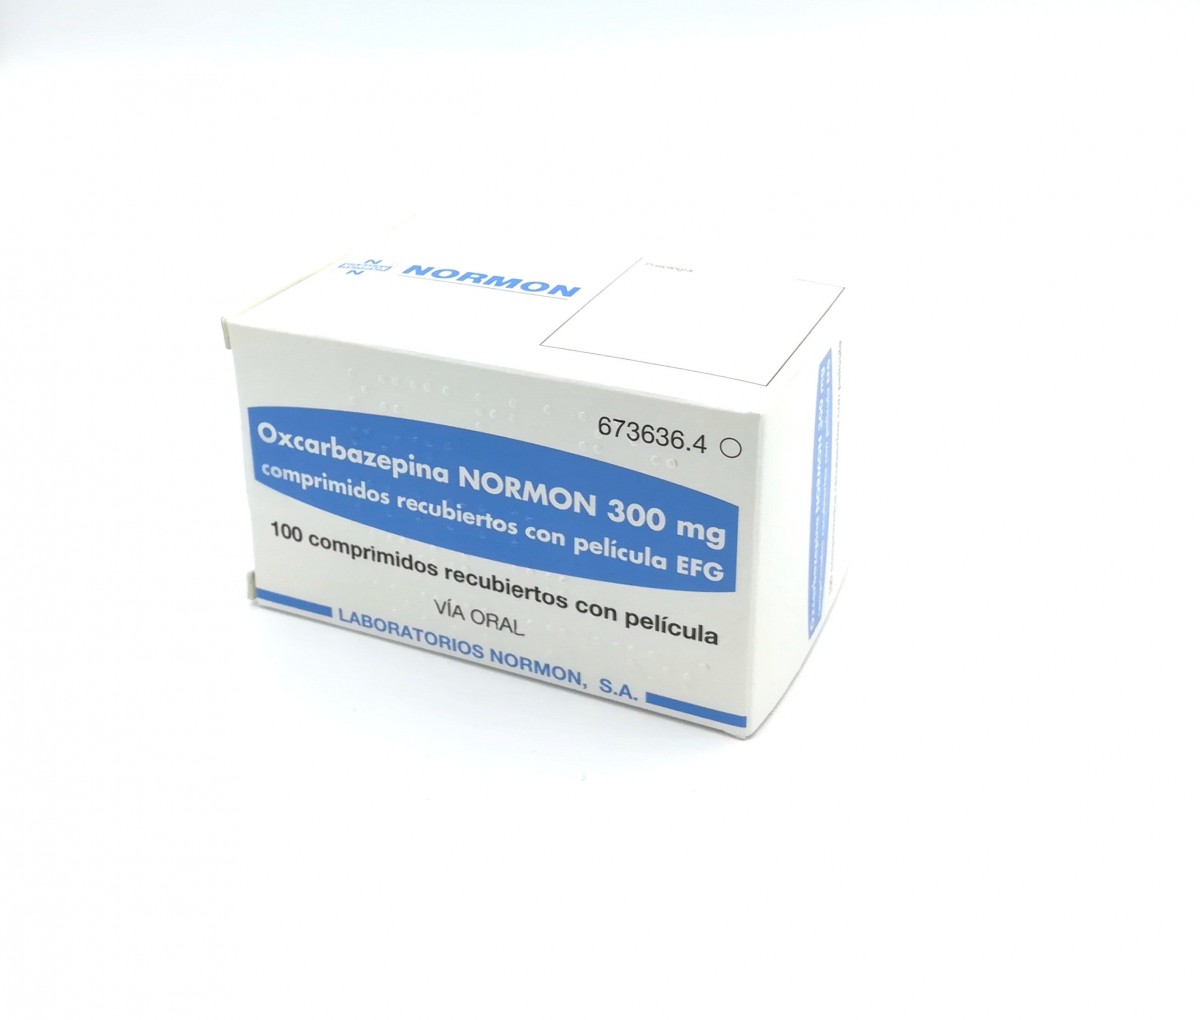 OXCARBAZEPINA NORMON 300 mg COMPRIMIDOS RECUBIERTOS CON PELICULA EFG , 500 comprimidos fotografía del envase.